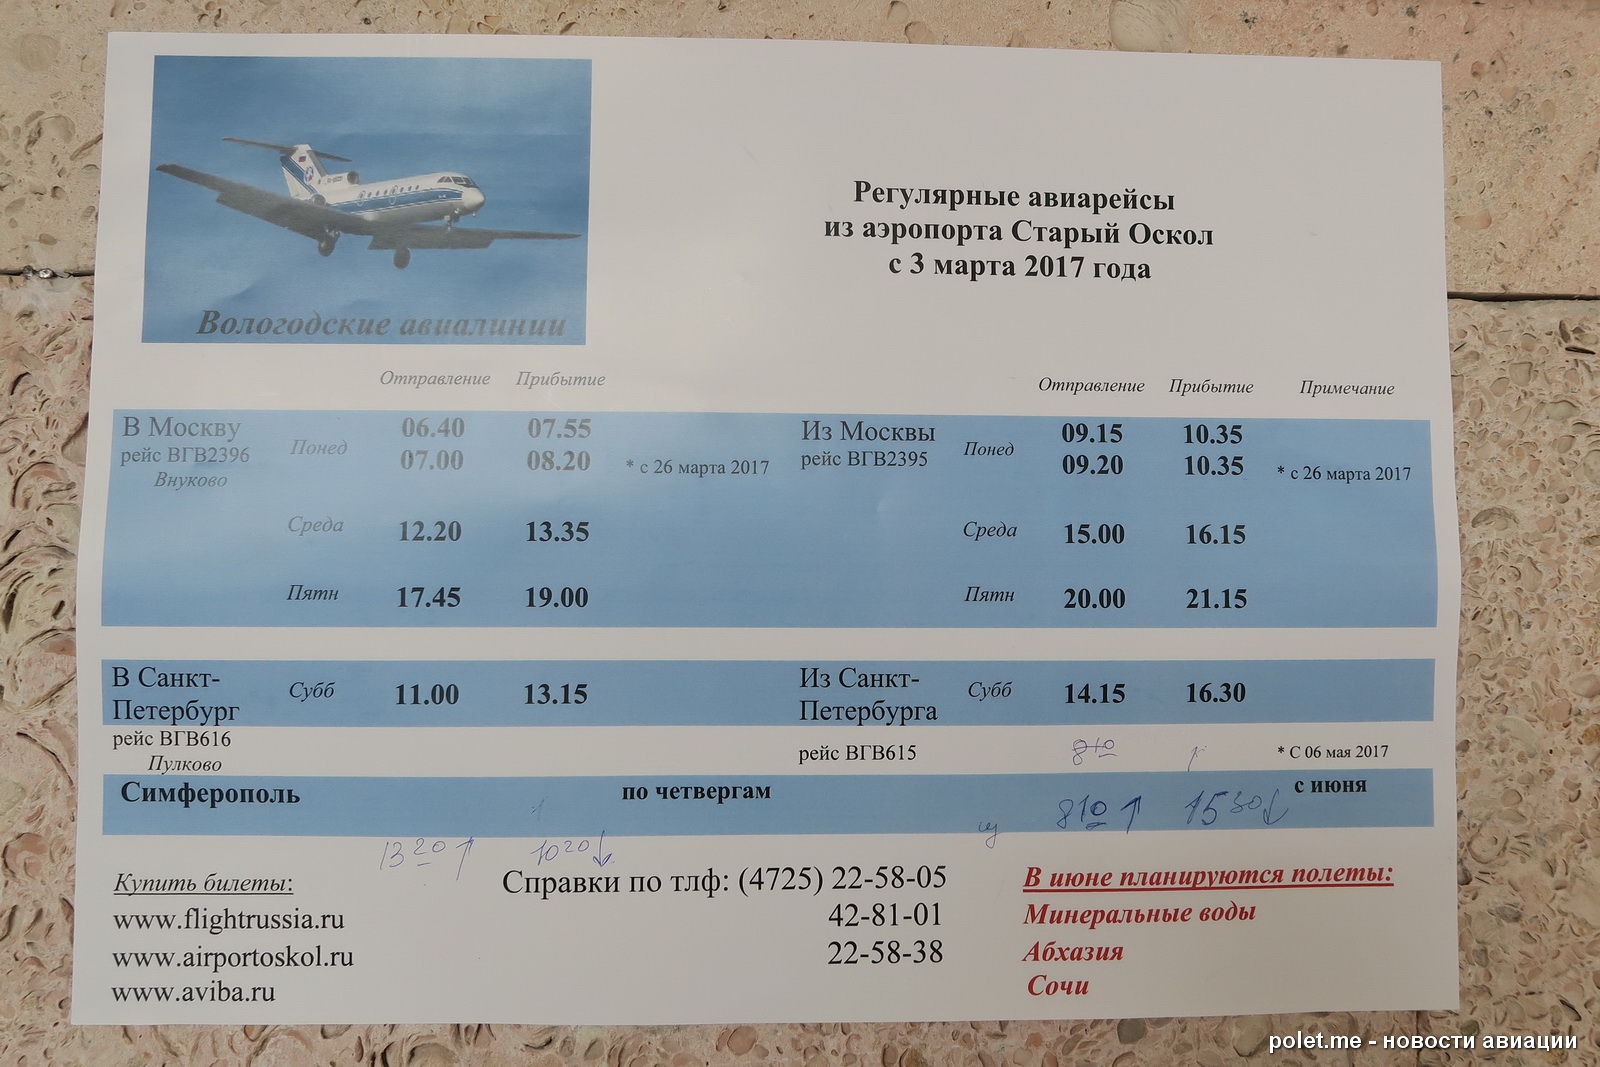 цена авиабилета в москву из курска